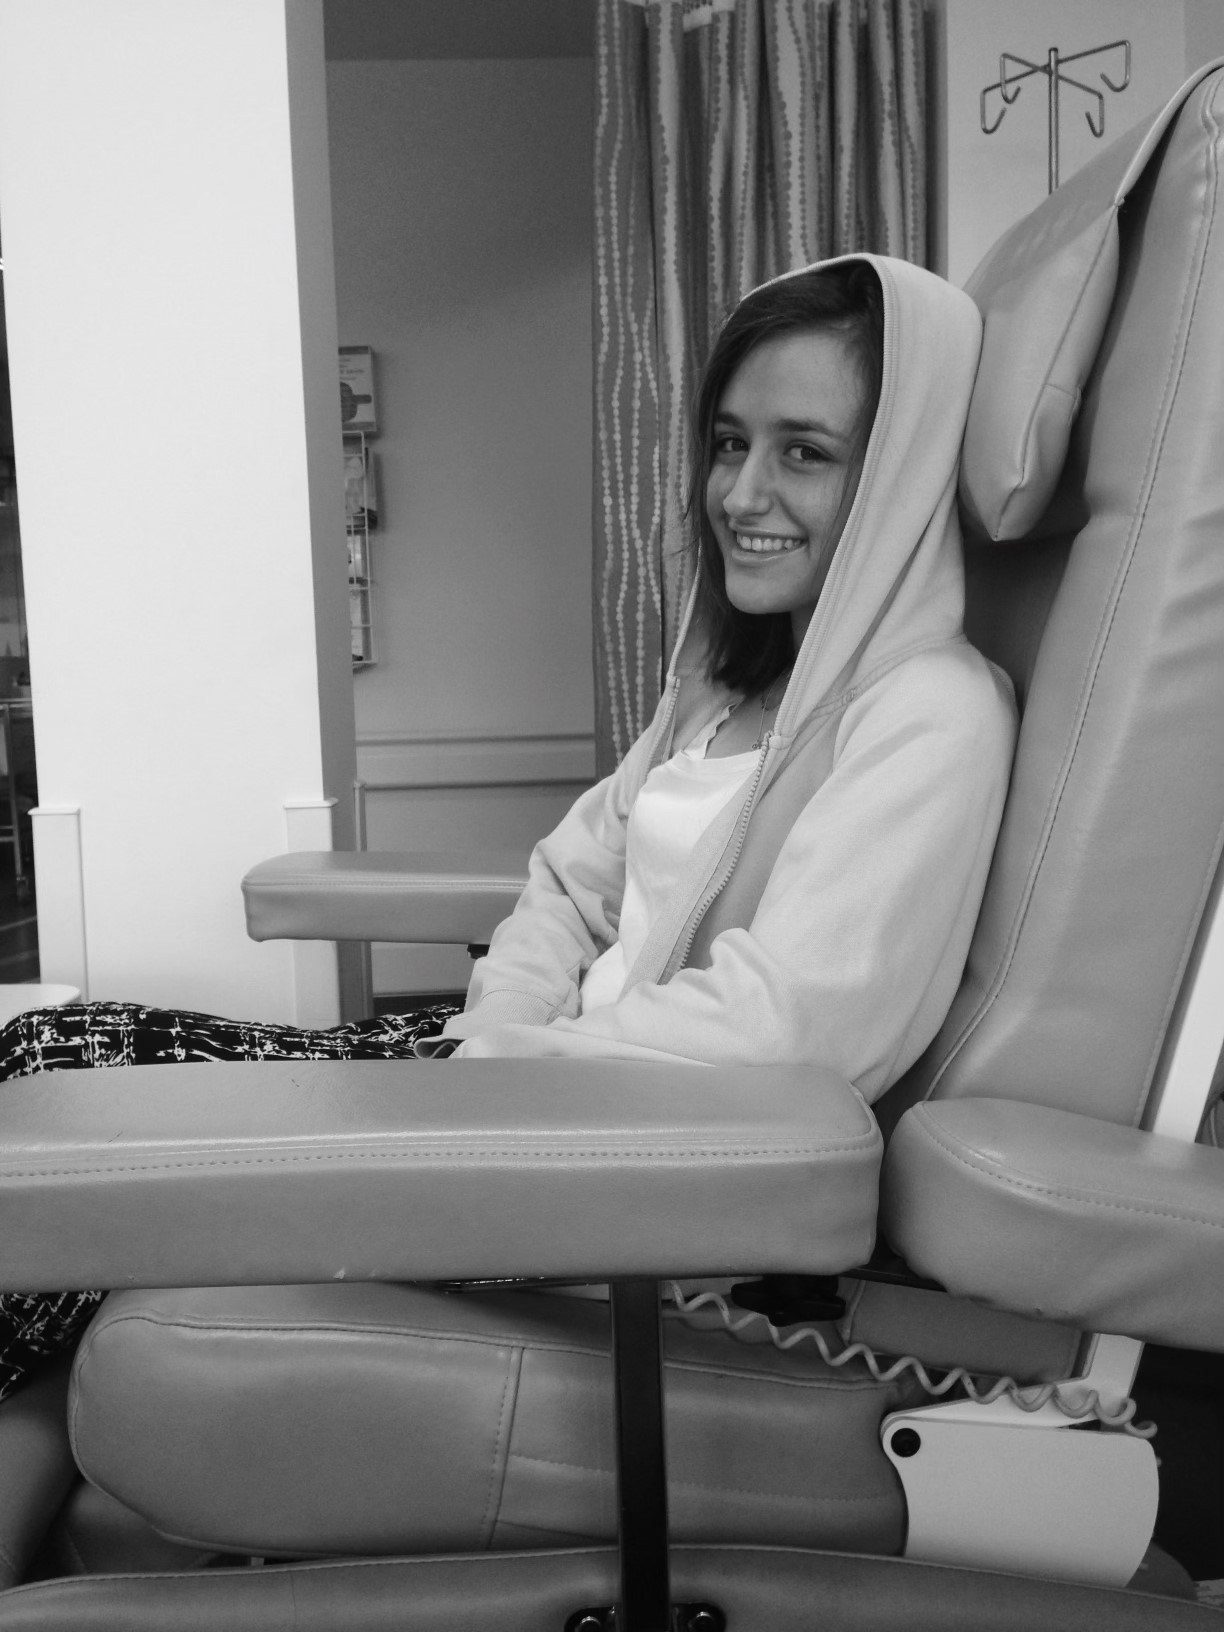 Vittoria having chemotherapy